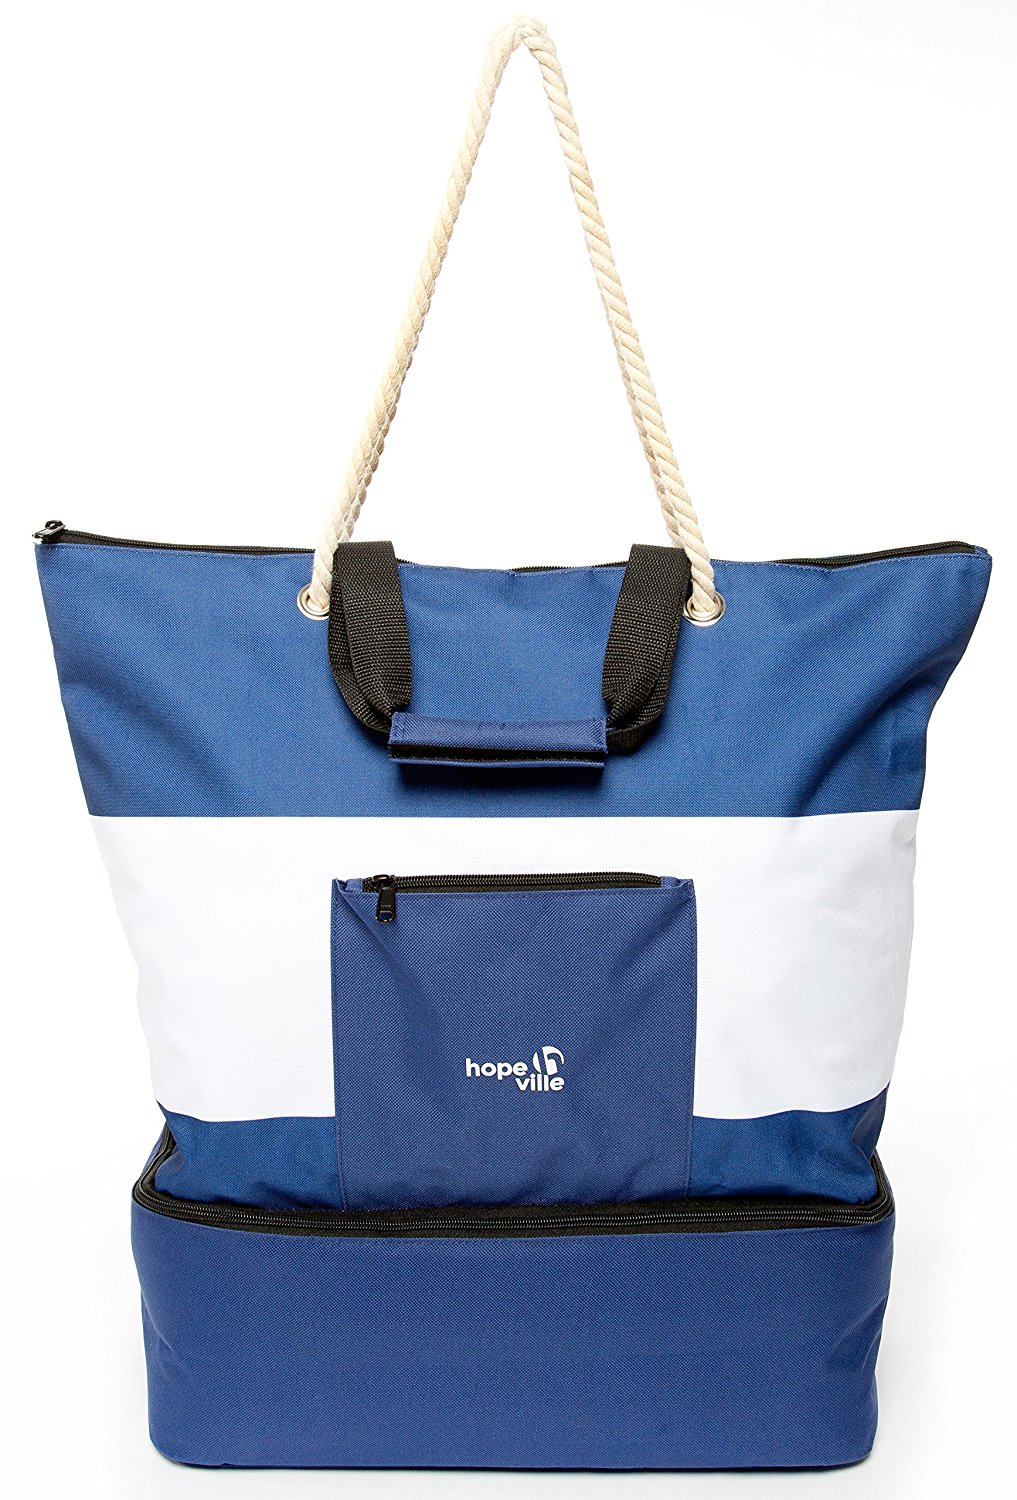 Wasserabweisend Strandtasche XXL Familie Diealles Shine Große Strandtasche mit Reißverschluss Badetasche Damen für Urlaub Einkaufen Sommer Beach Bags for Women 